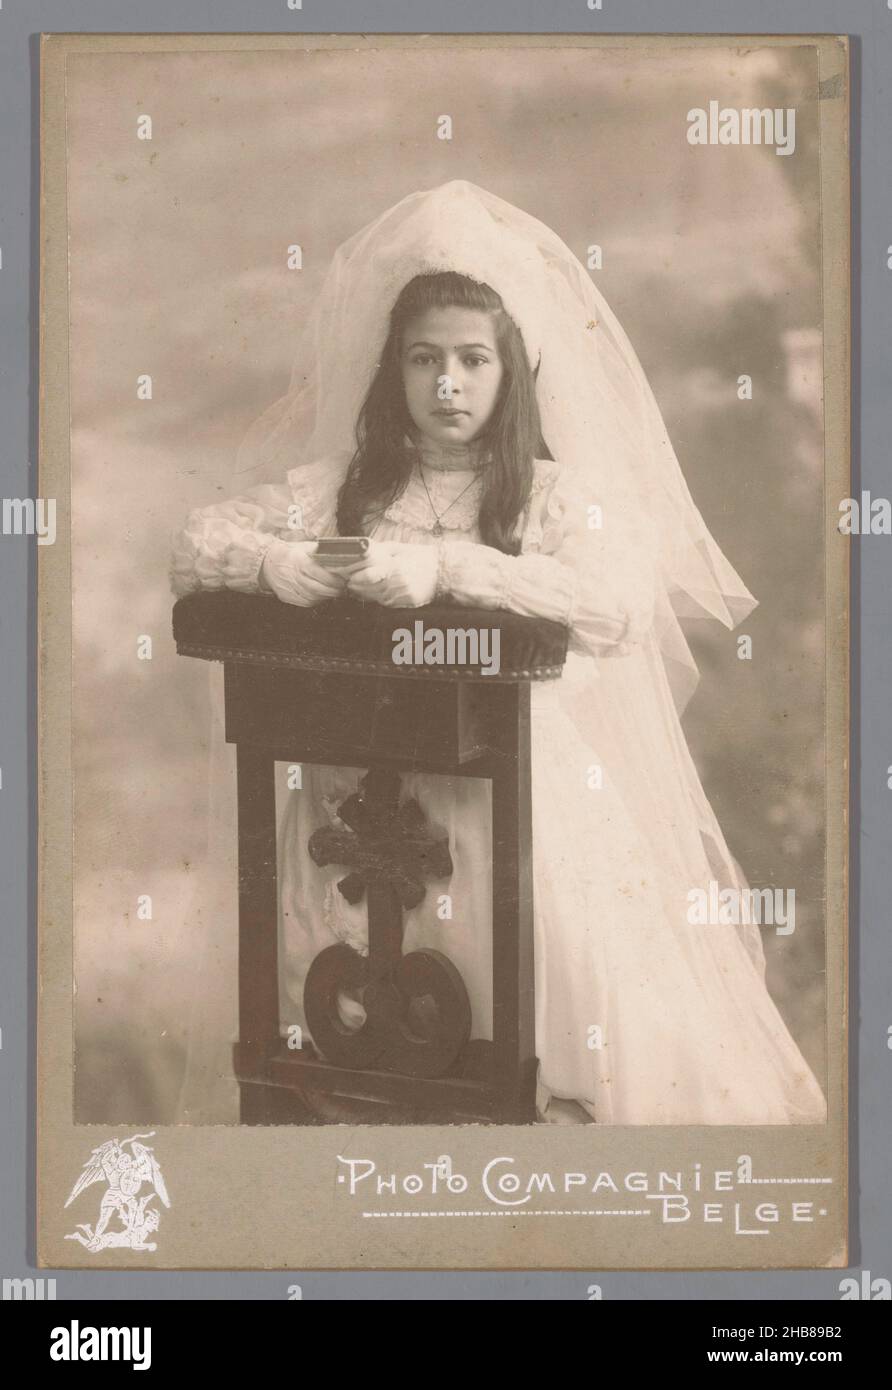 Portrait d'un communicant inconnu derrière une chaise de prière, photo Compagnie Belge (mentionnée sur l'objet), Bruxelles, c.1880 - c.1910, support photographique, carton, hauteur 142 mm × largeur 99 mm Banque D'Images